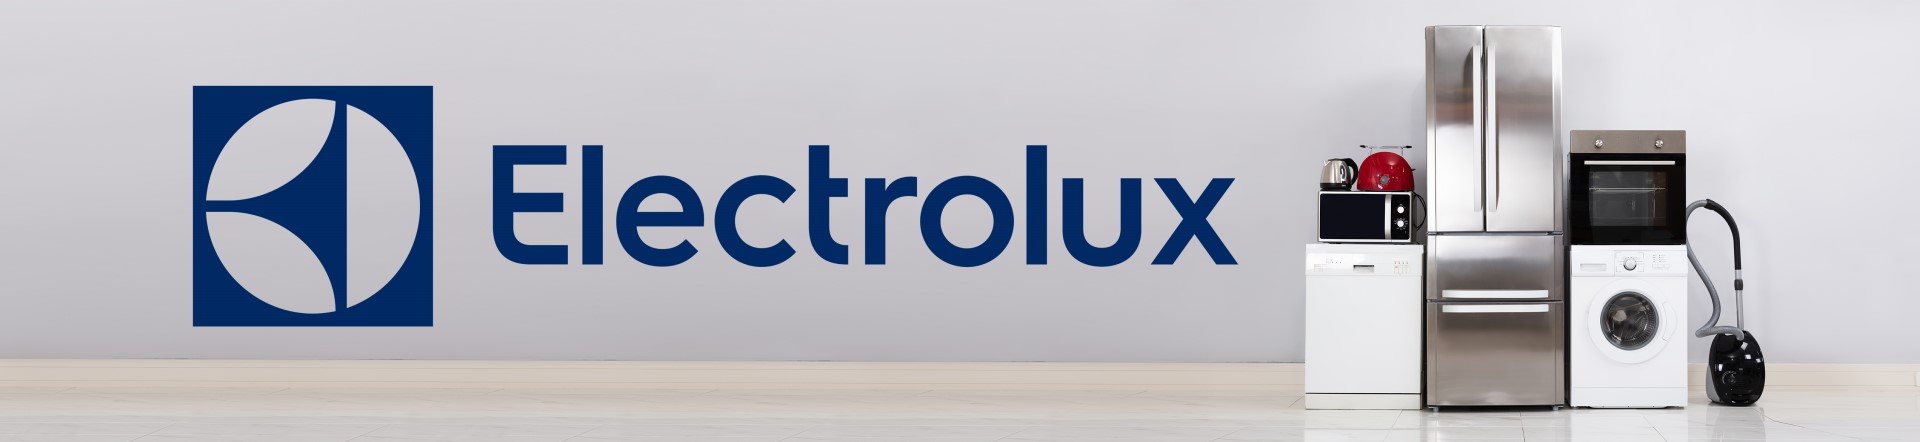 Electrolux: značka, která u svých spotřebičů spojuje inovaci s ekologií